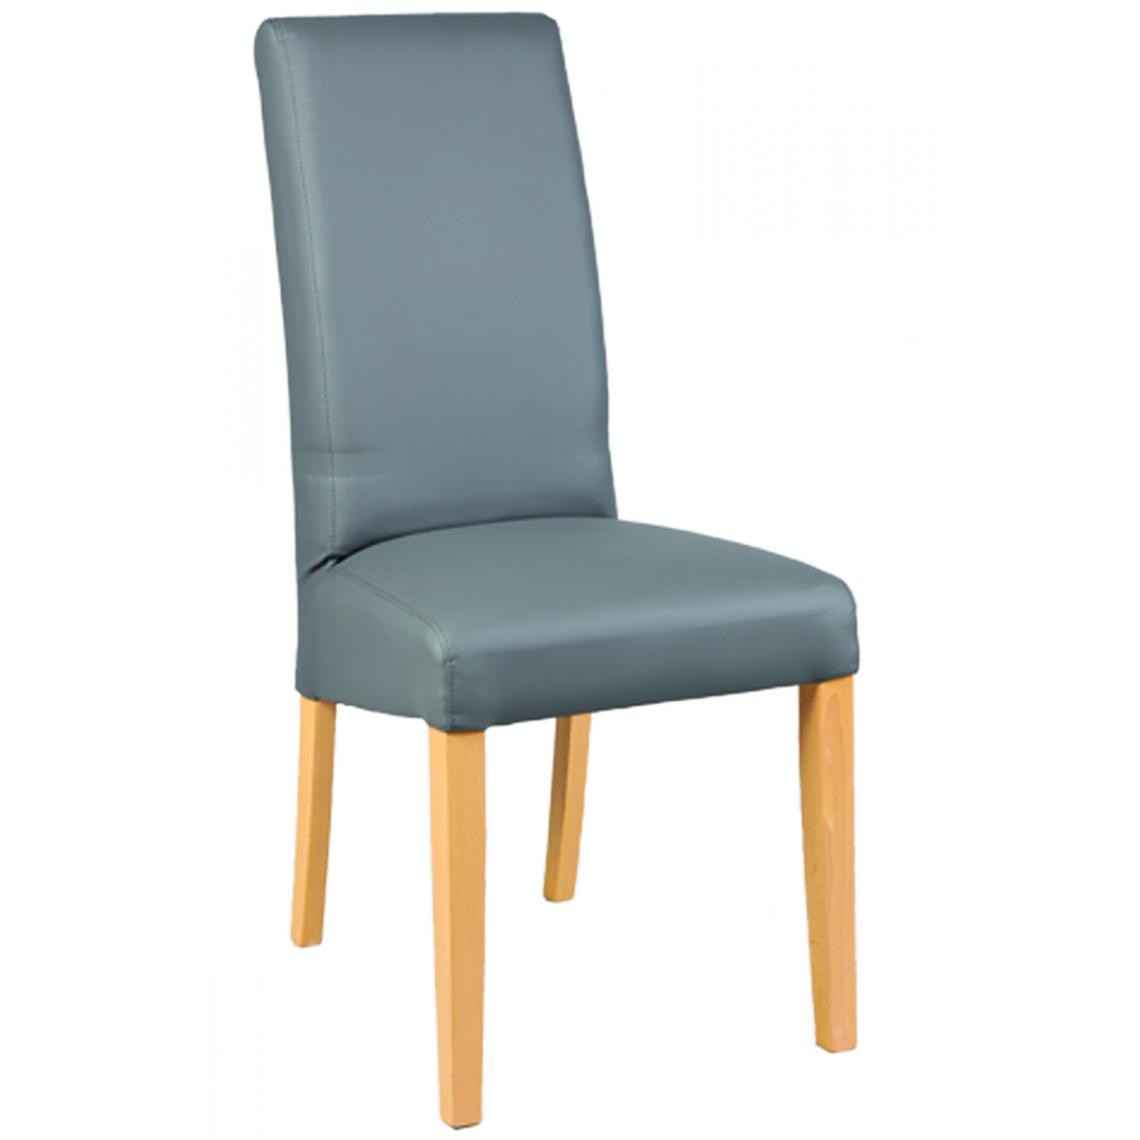 Pegane - Lot de 6 chaises en hêtre et Polyuréthane coloris gris - Dim : L 47 x P 52 x Ht 97 x Ht Ass 48 cm - Chaises